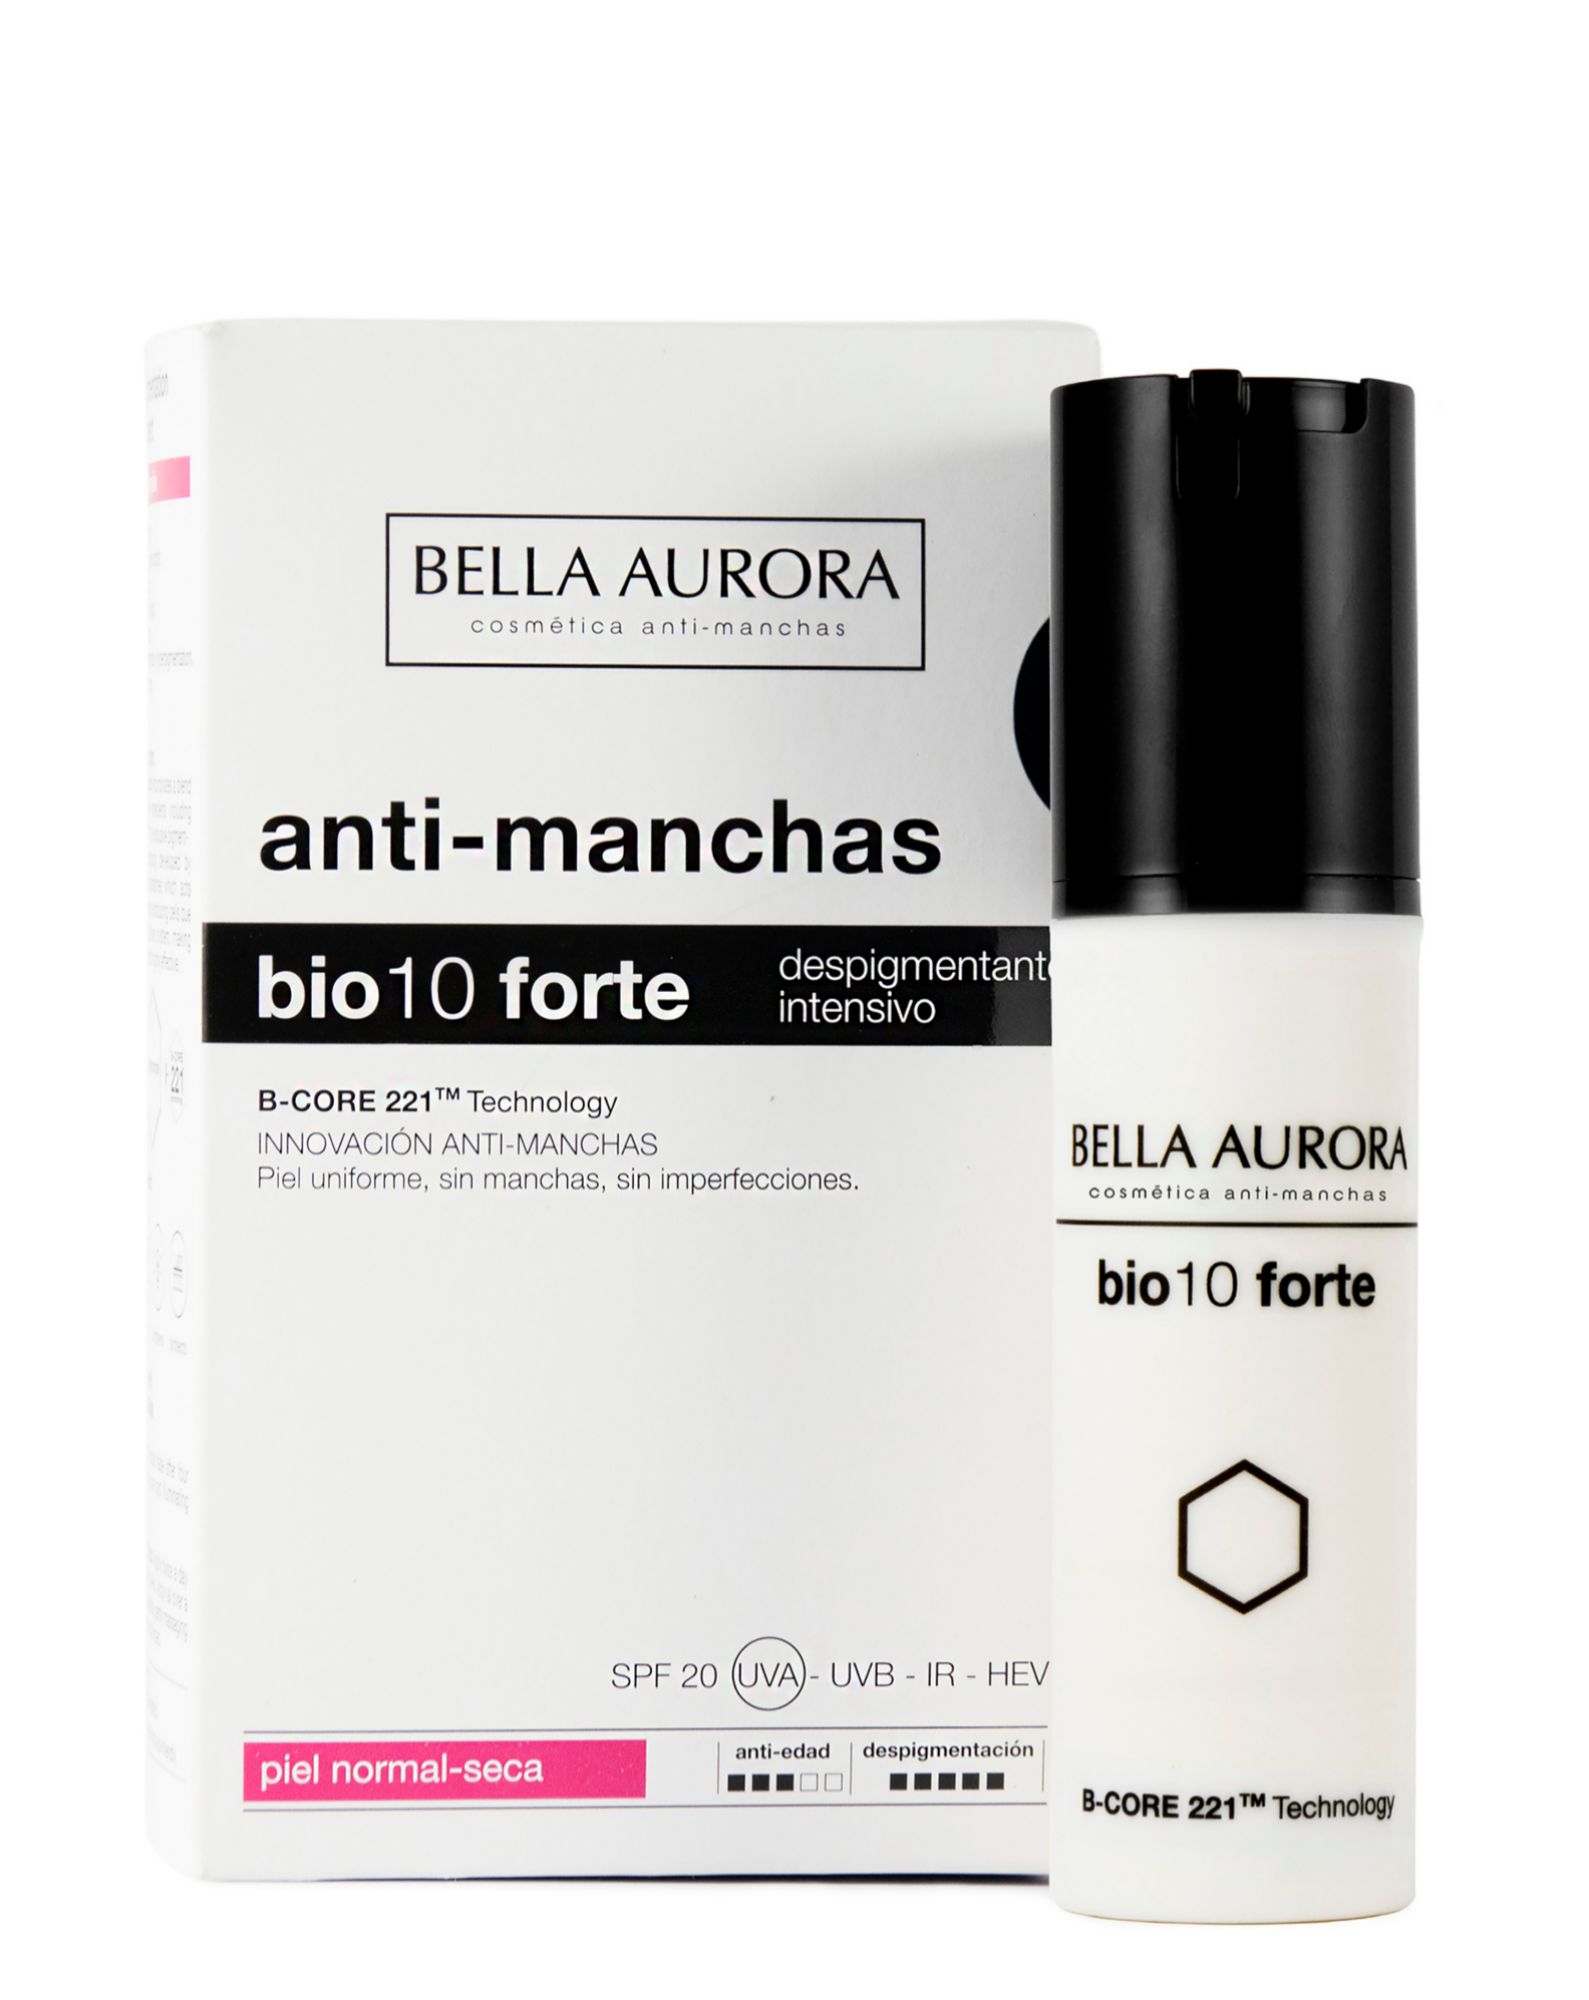 Bio10 forte anti-manchas es un despigmentante intensivo que te ayudará a cuidar tu rostro.